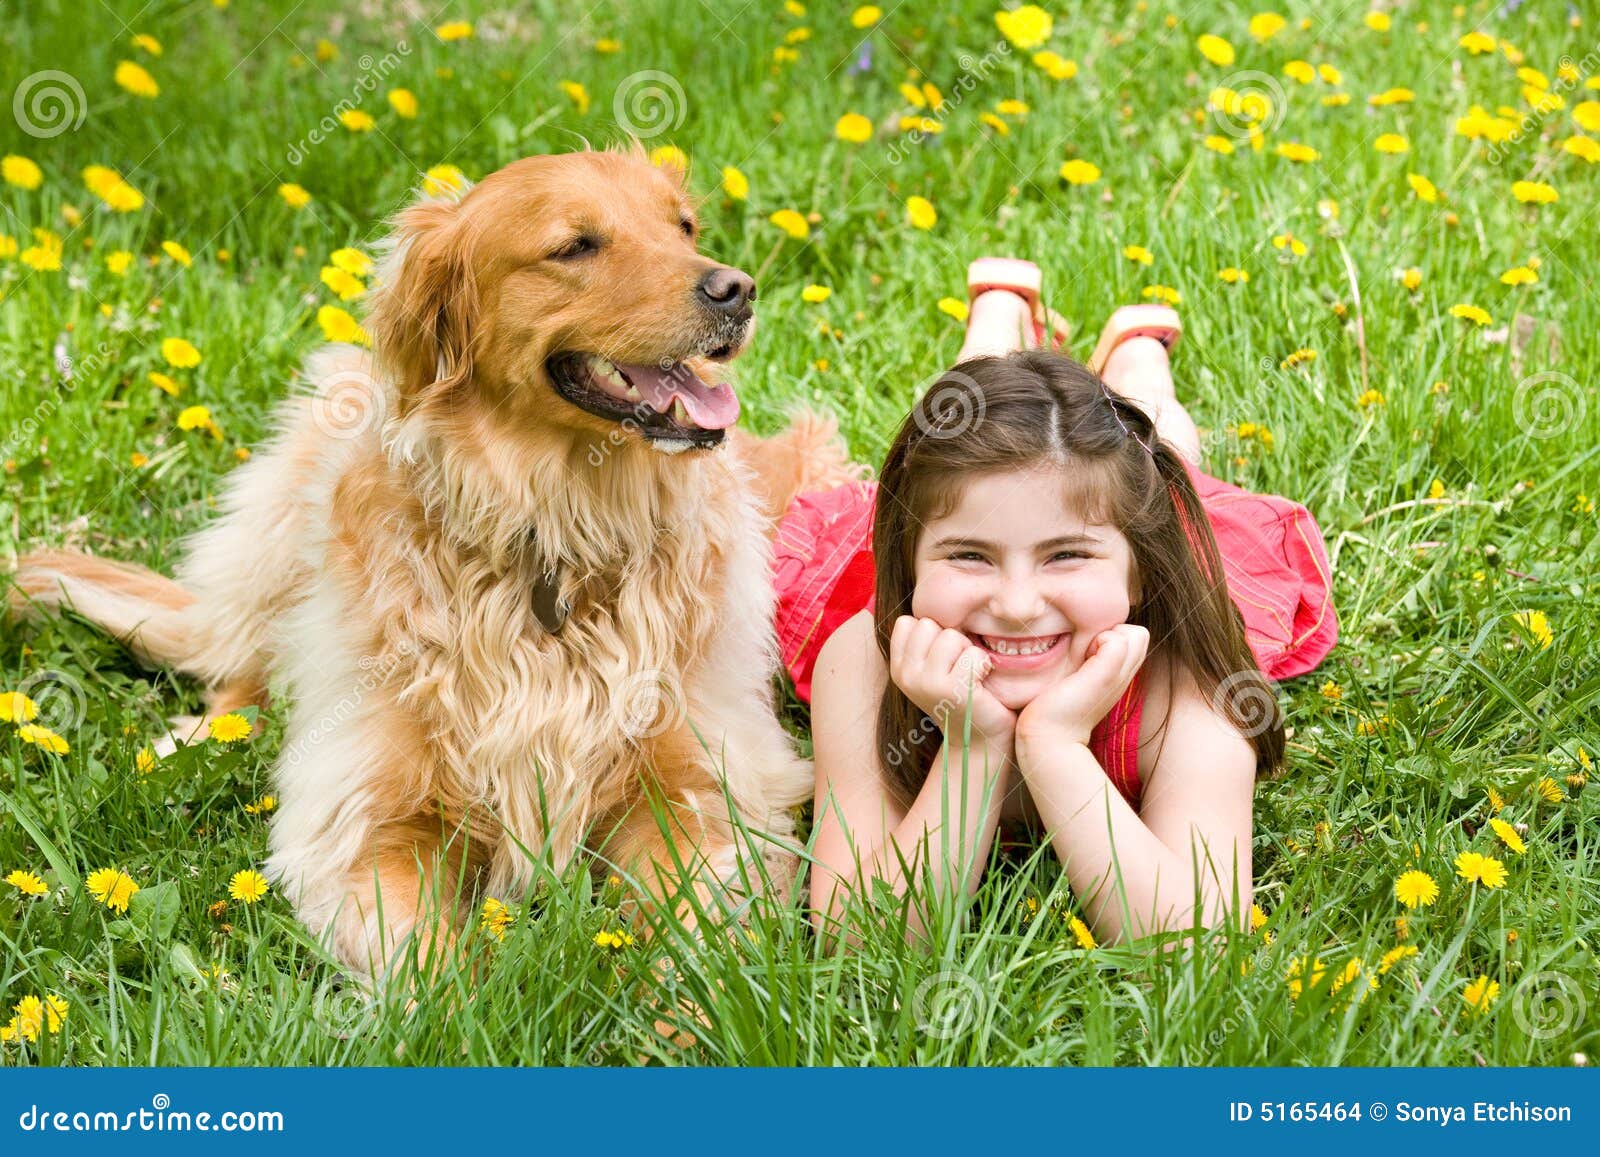 图片素材 : 小狗, 爱, 拥抱, 约克, 杜伯, 的金发女人, 狗喜欢哺乳动物, 美女 2372x3597 - - 804832 - 素材 ...